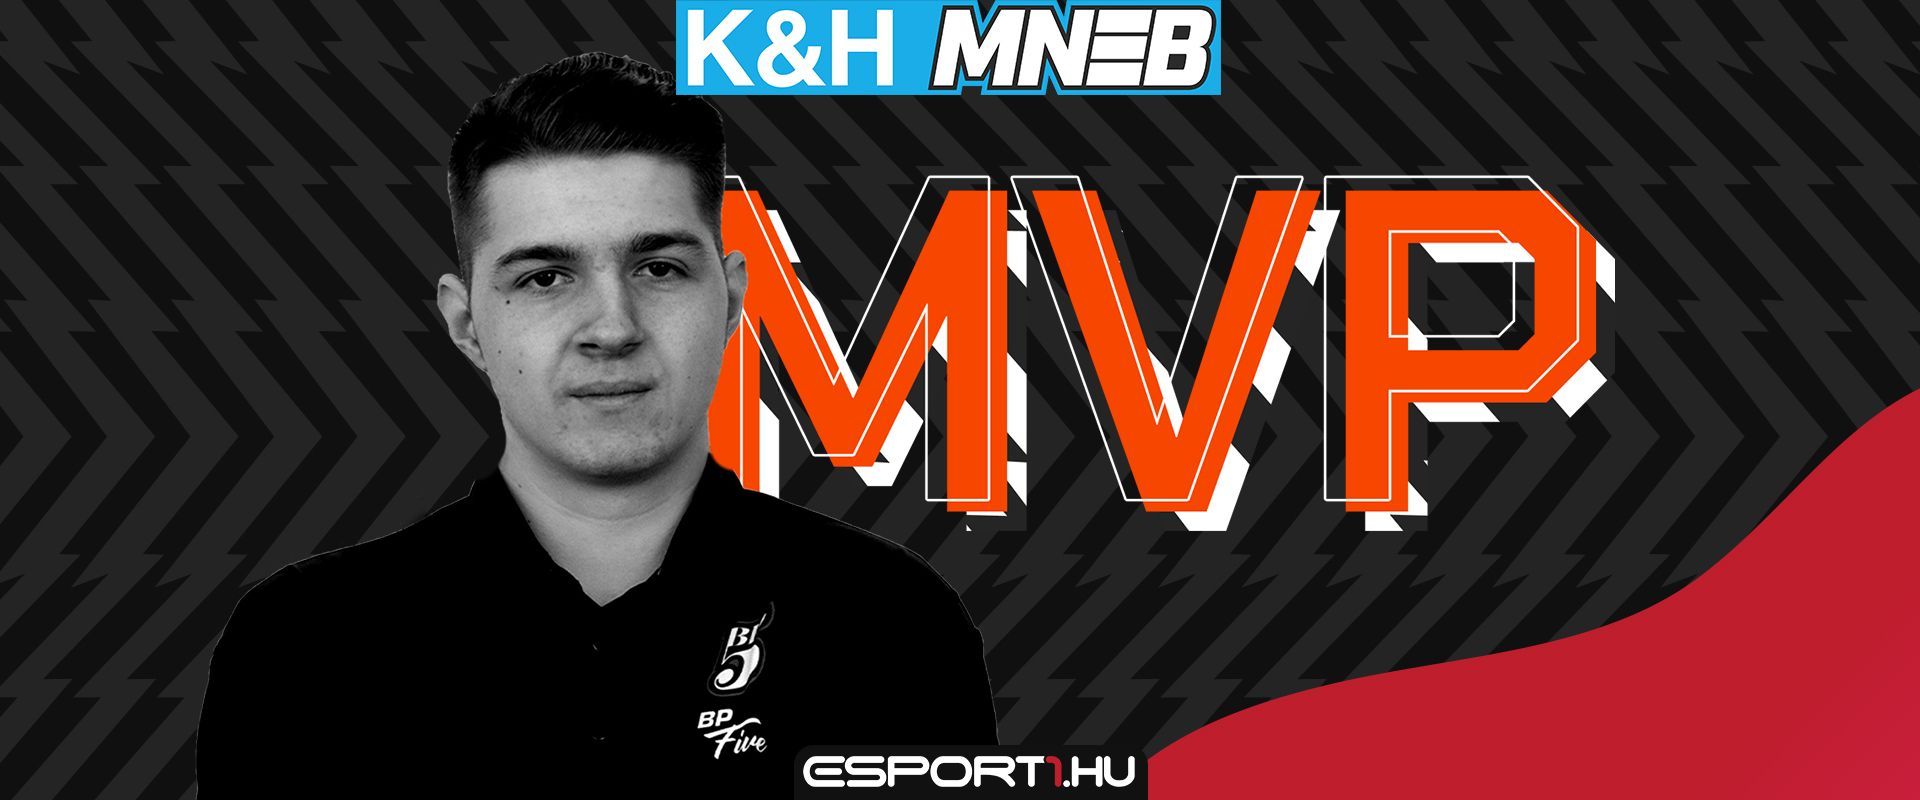 K&H MNEB S2 döntőjének legjobbja - kory MVP